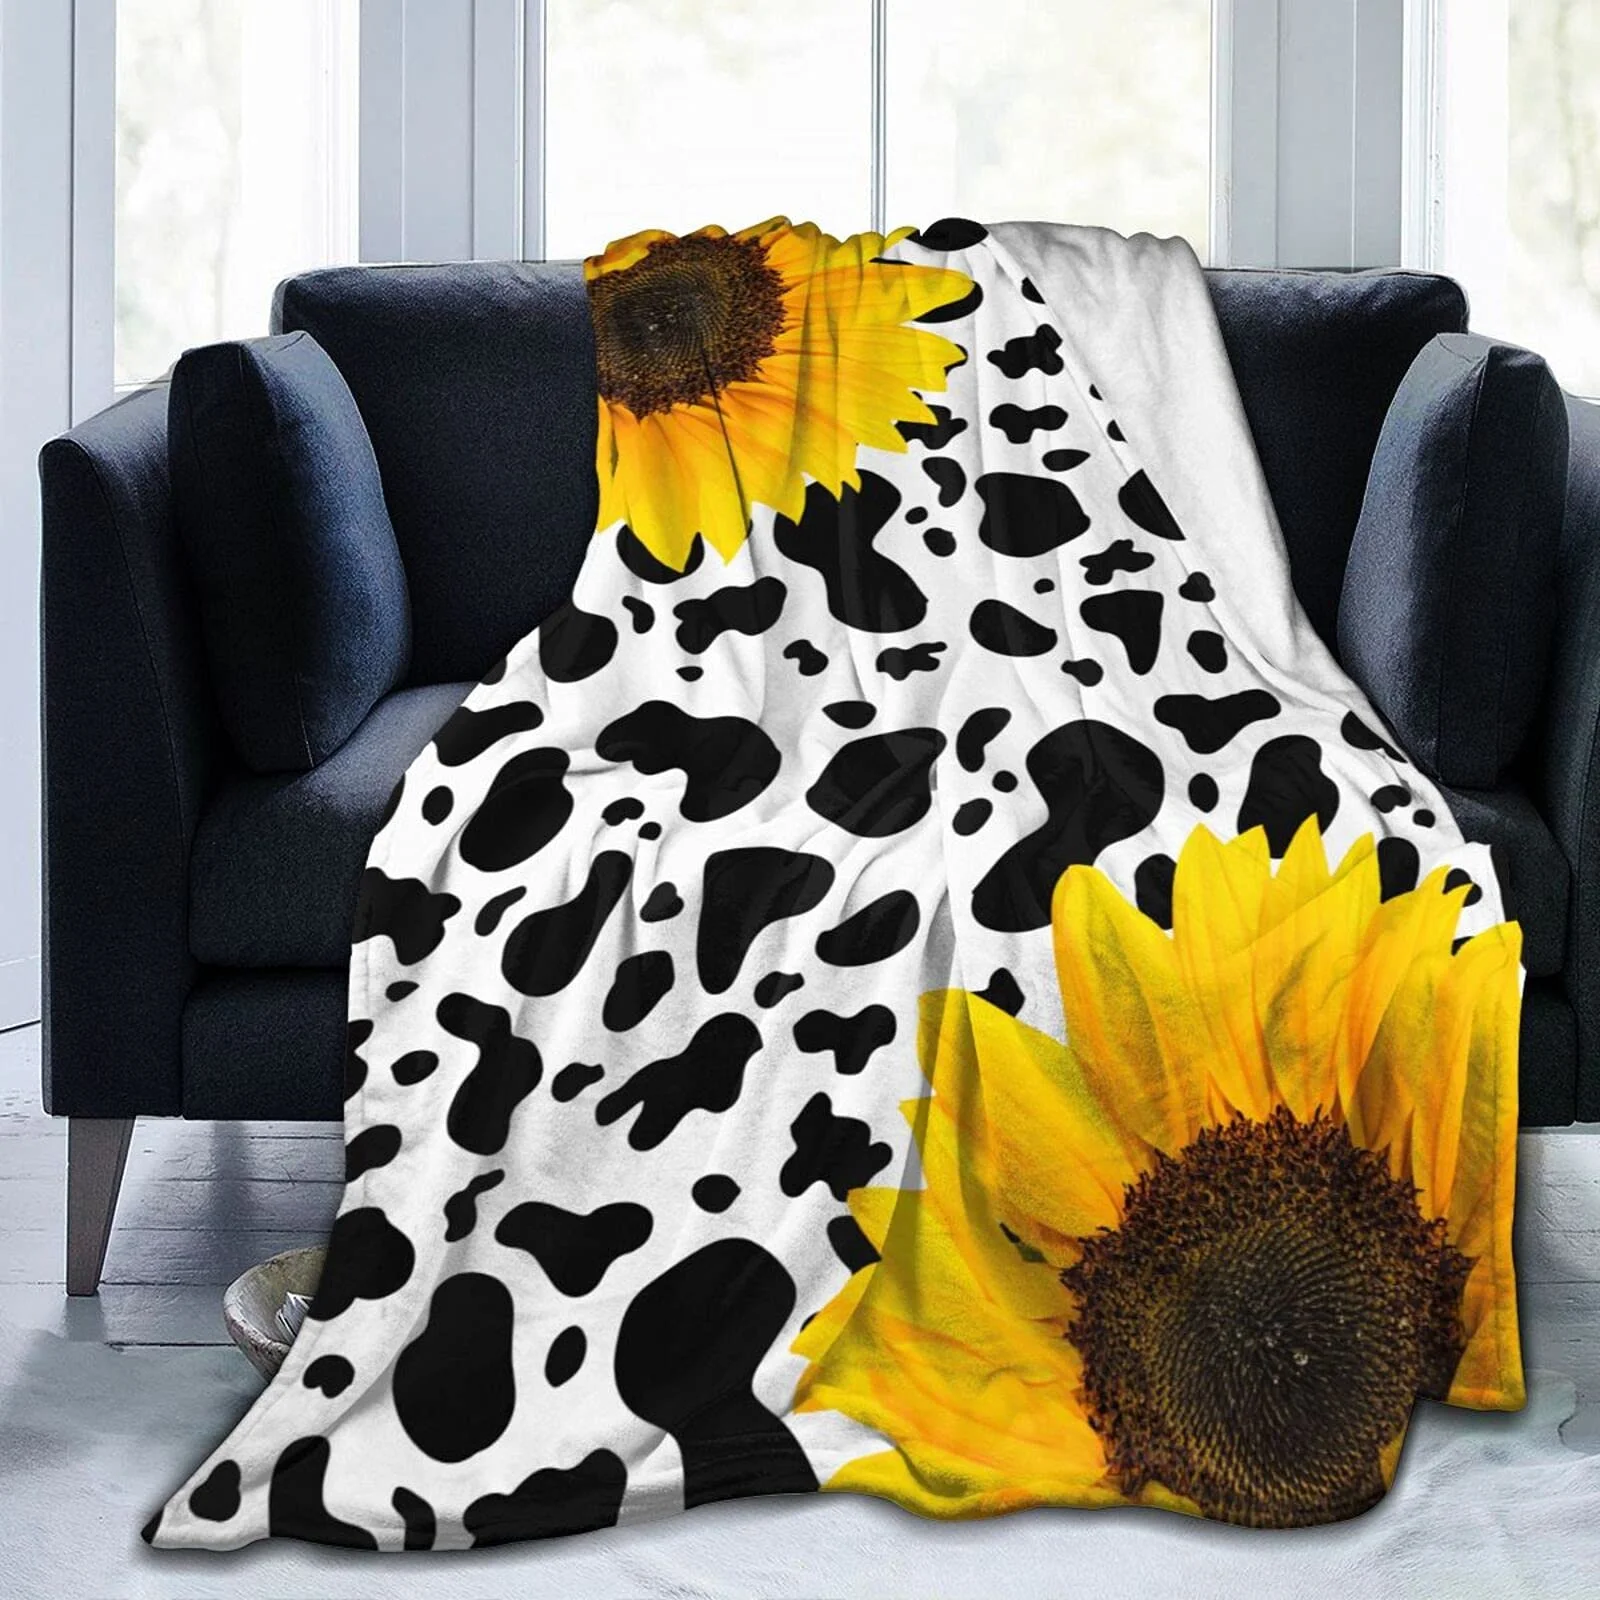 

Флисовое одеяло с коровьим принтом, супермягкое и удобное плюшевое одеяло с подсолнухом, покрывало из микрофибры для кровати, дивана, стула,...